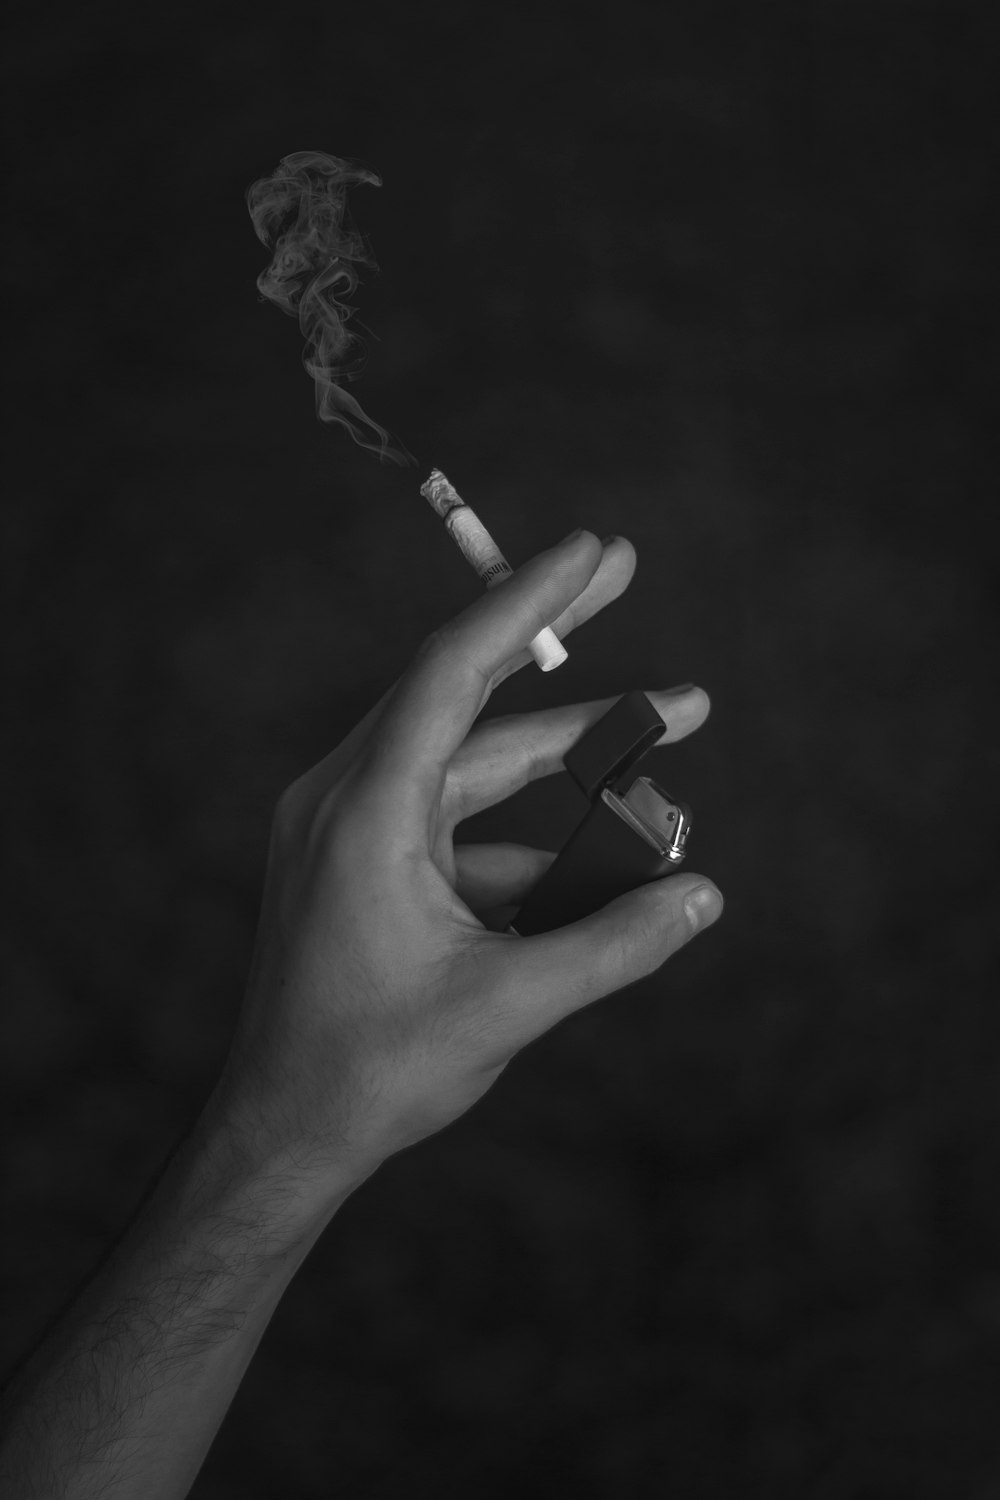 담배 스틱을 들고 있는 사람의 그레이스케일 사진